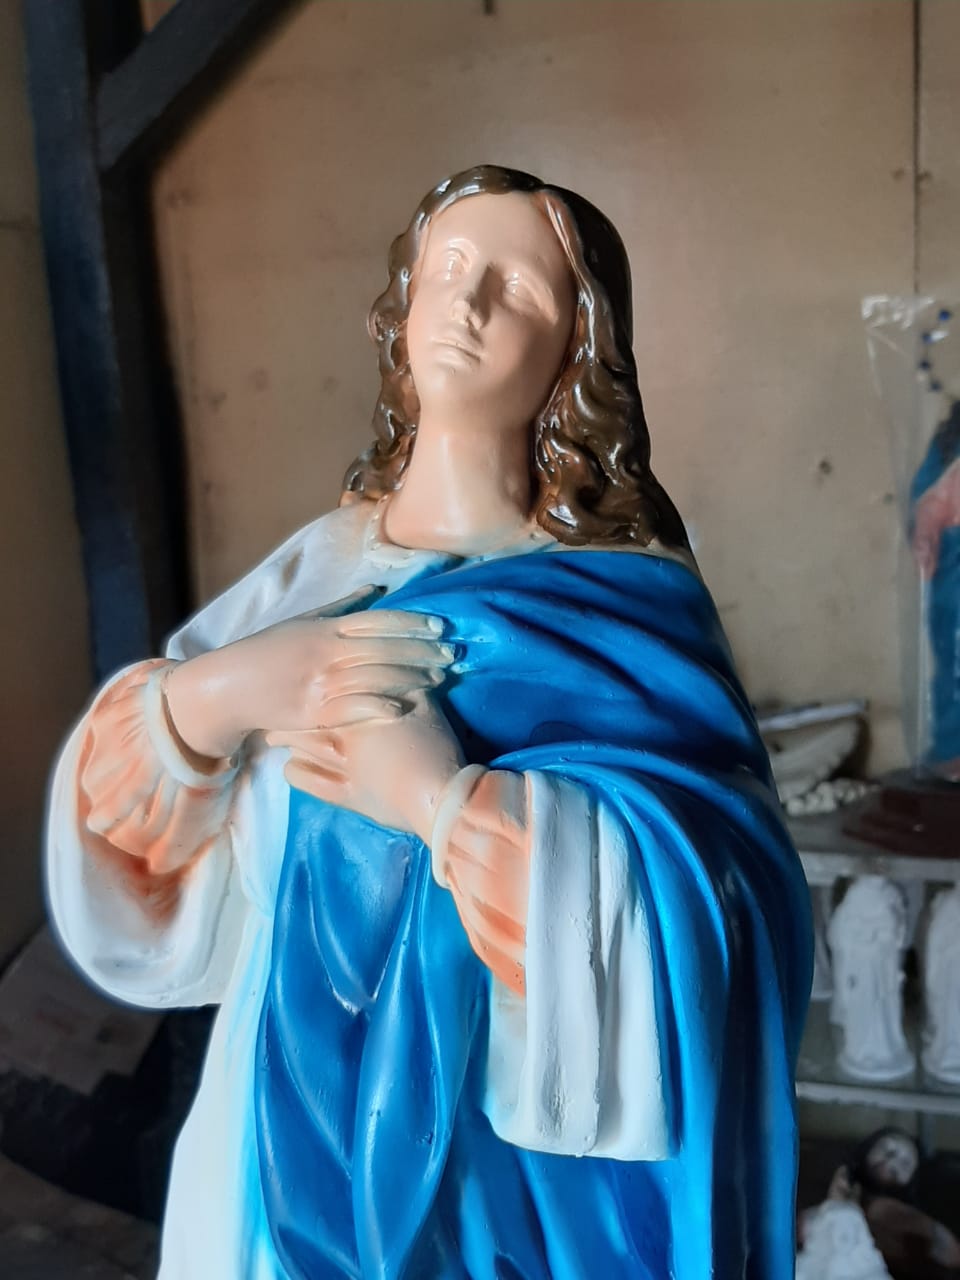 Comerciantes reportan ventas bajas de imágenes de Virgen María Managua. Por Jaime Mejía/Radio La Primerísima